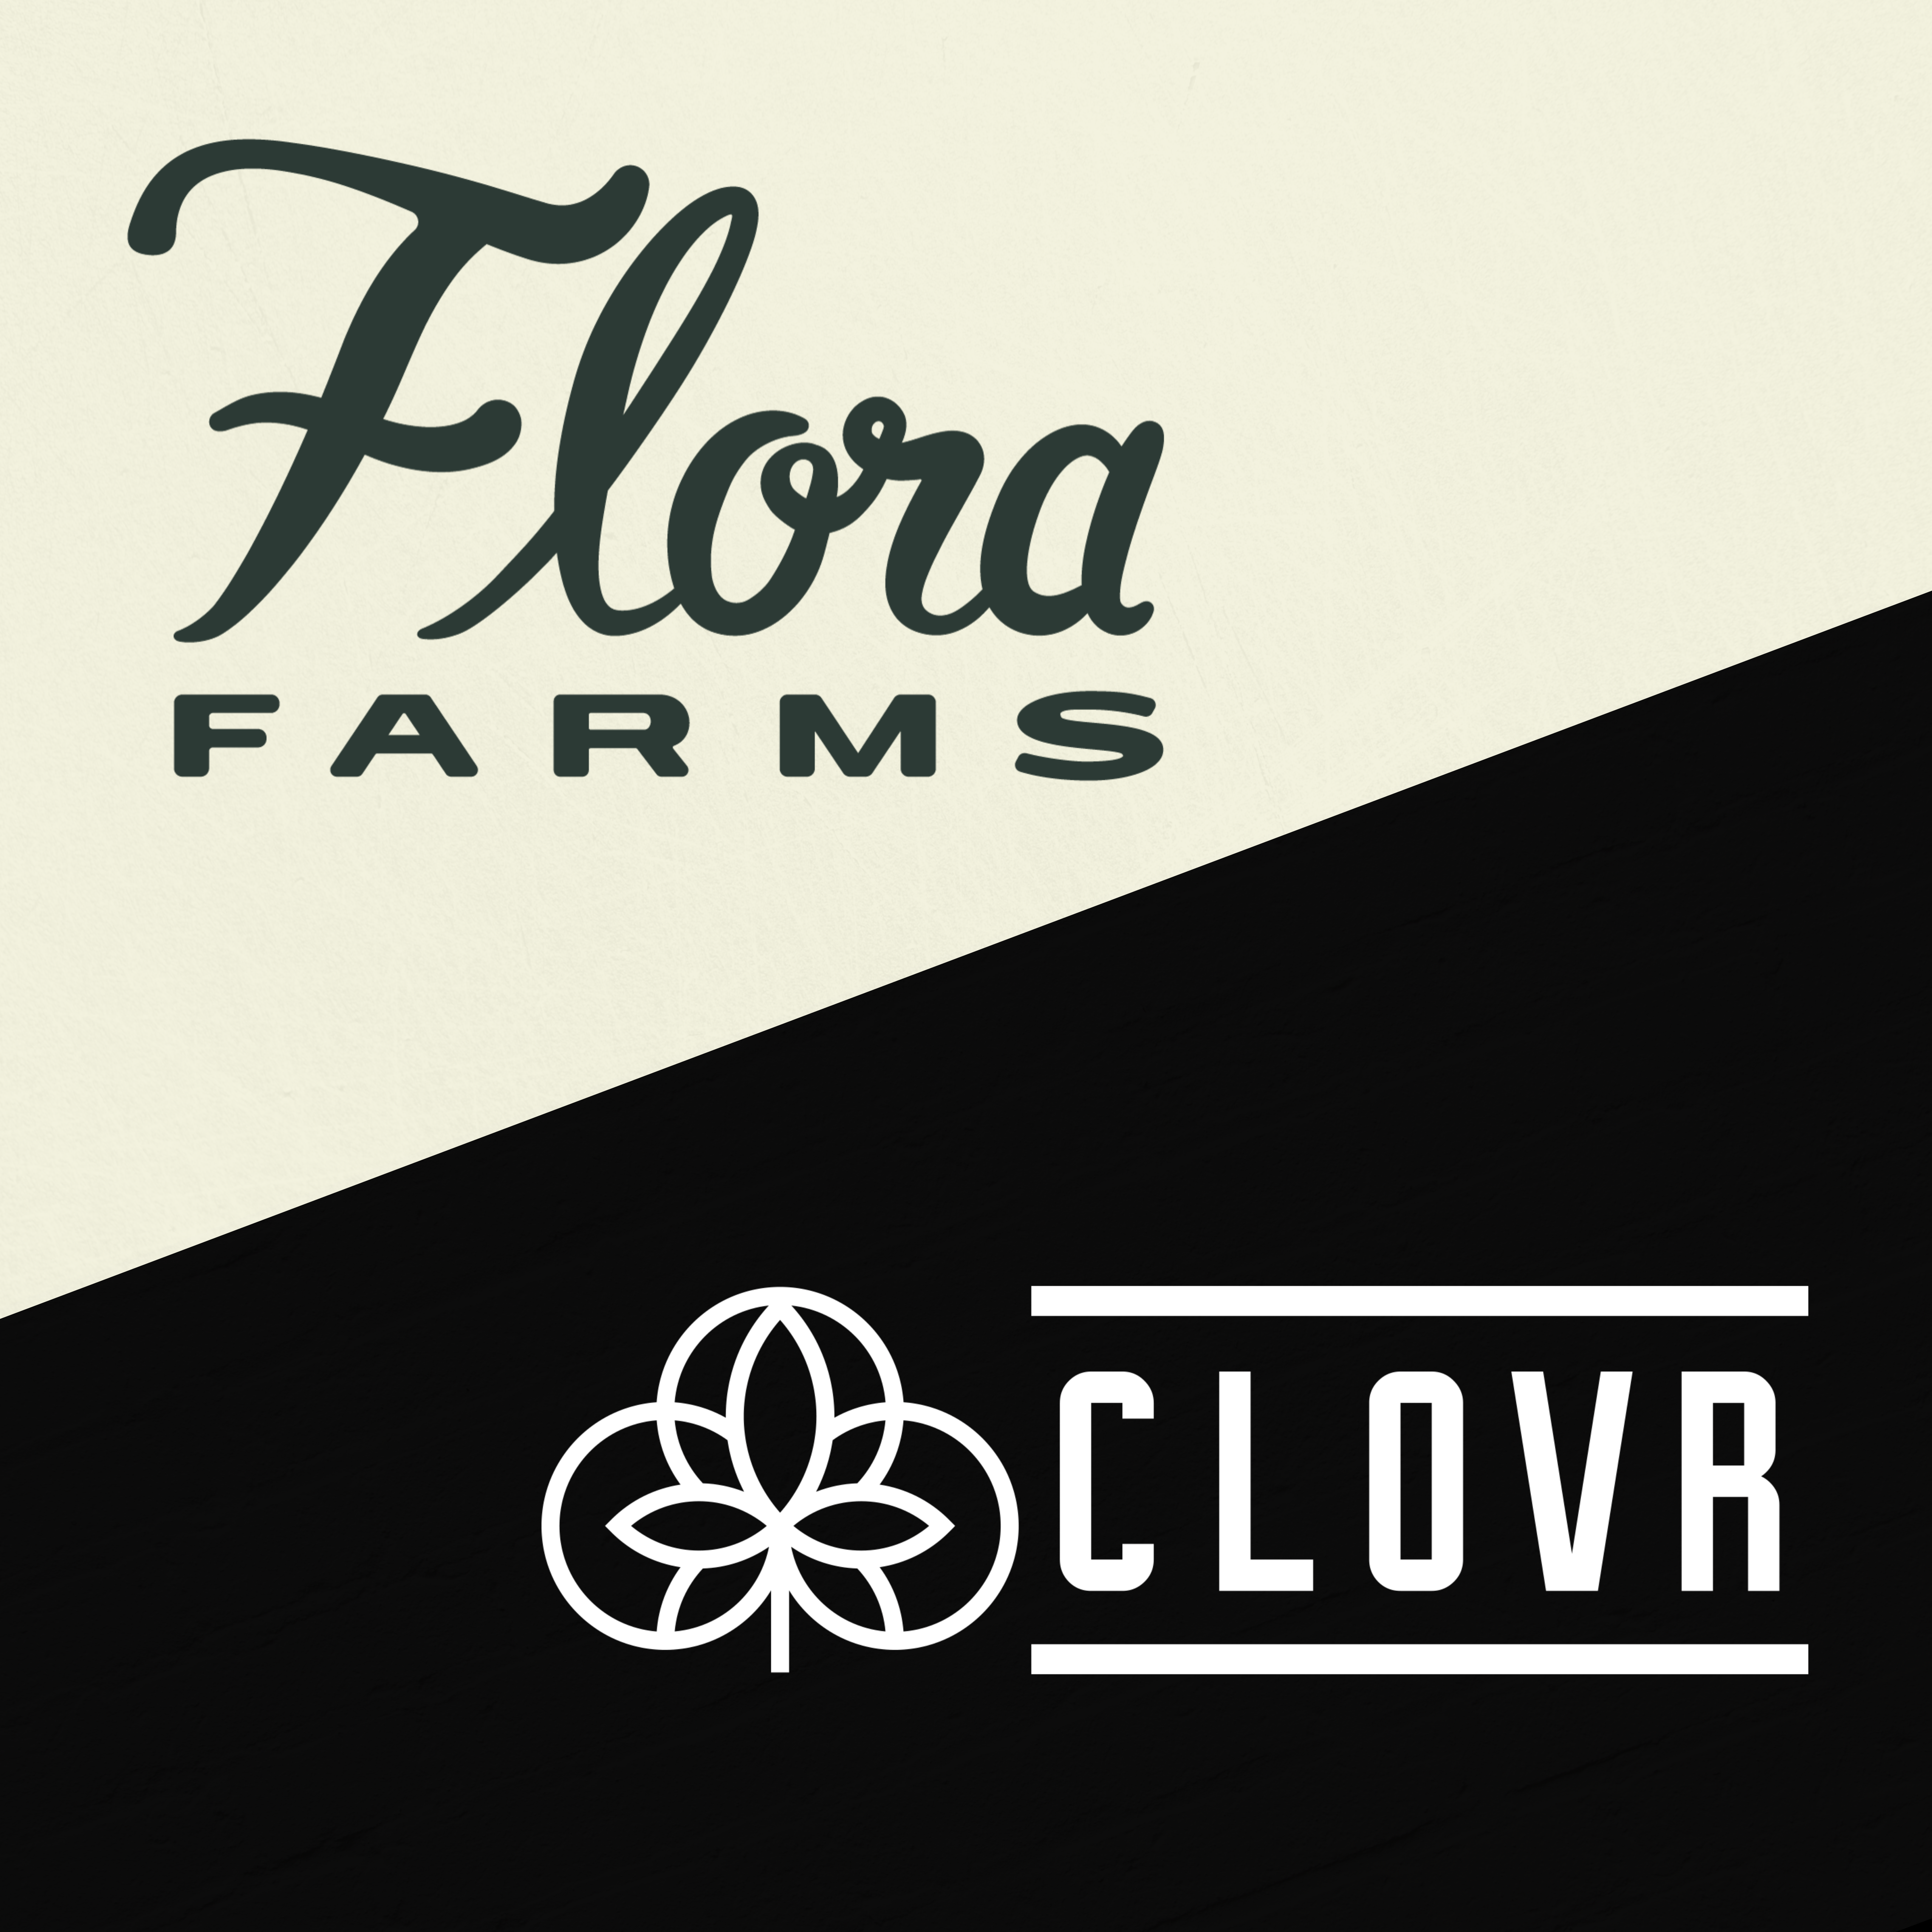 flora farms and clovr logos